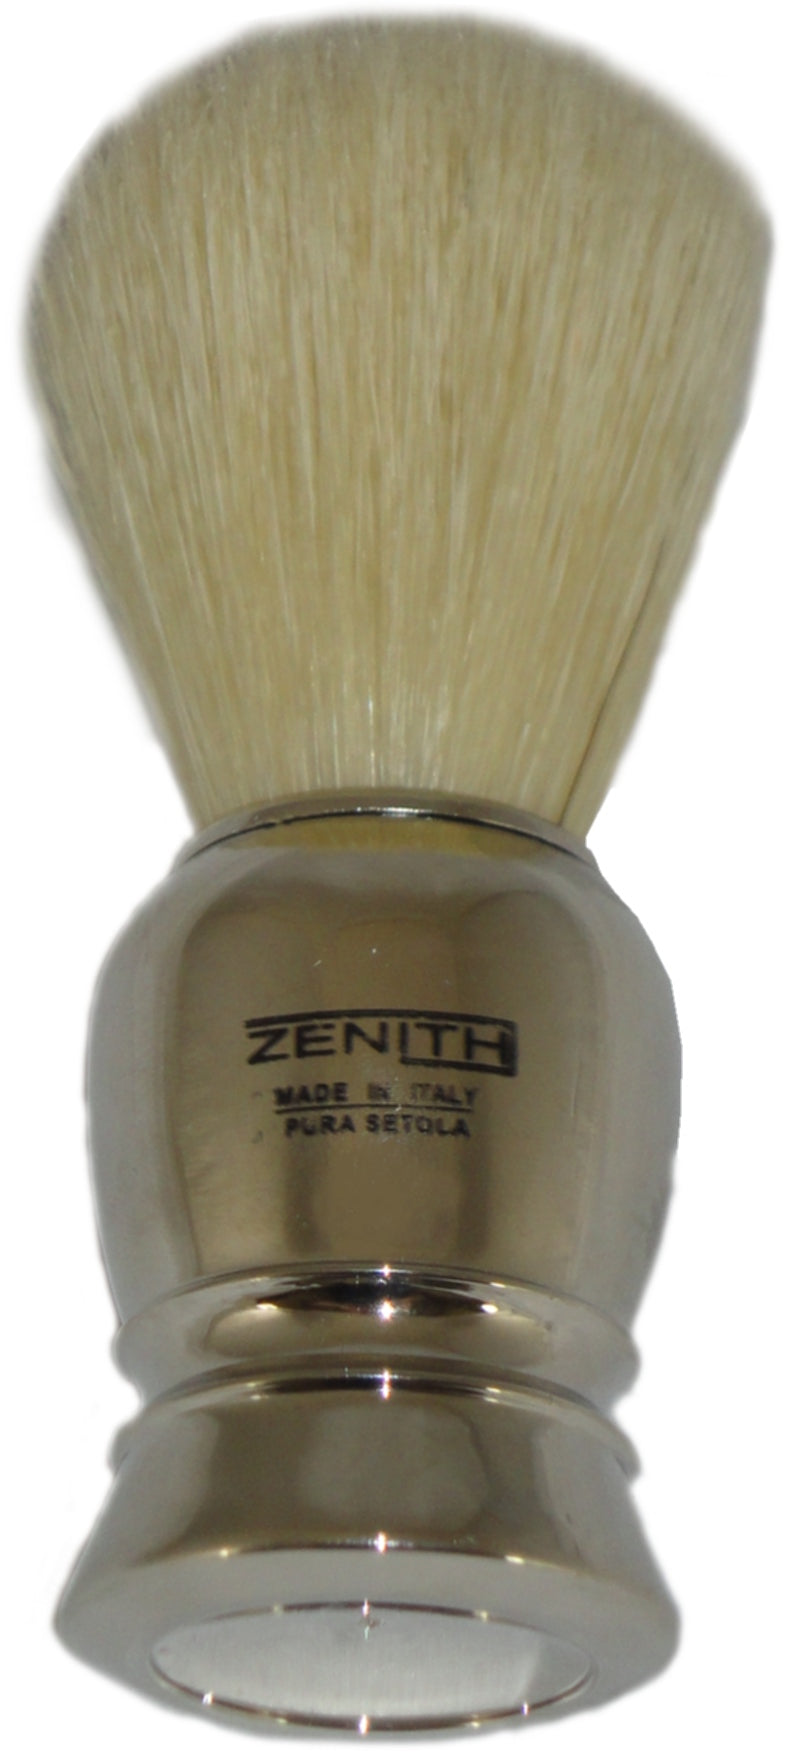 Zenith Chrome Shaving Brush